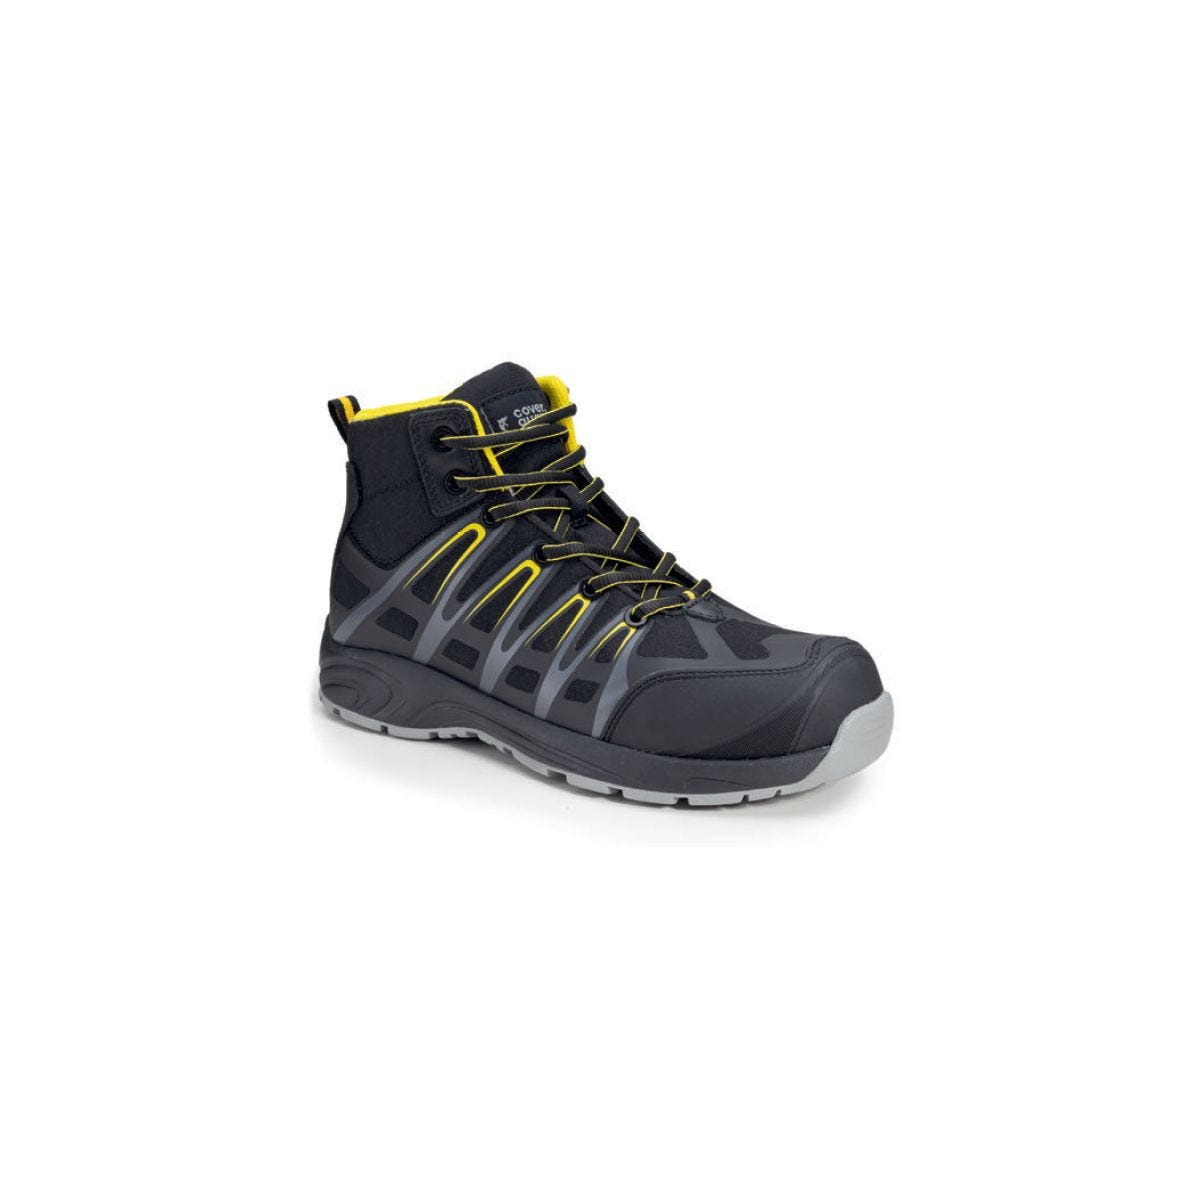 Chaussures de sécurité hautes ALUNI S3 noir et jaune - Coverguard - Taille 41 0